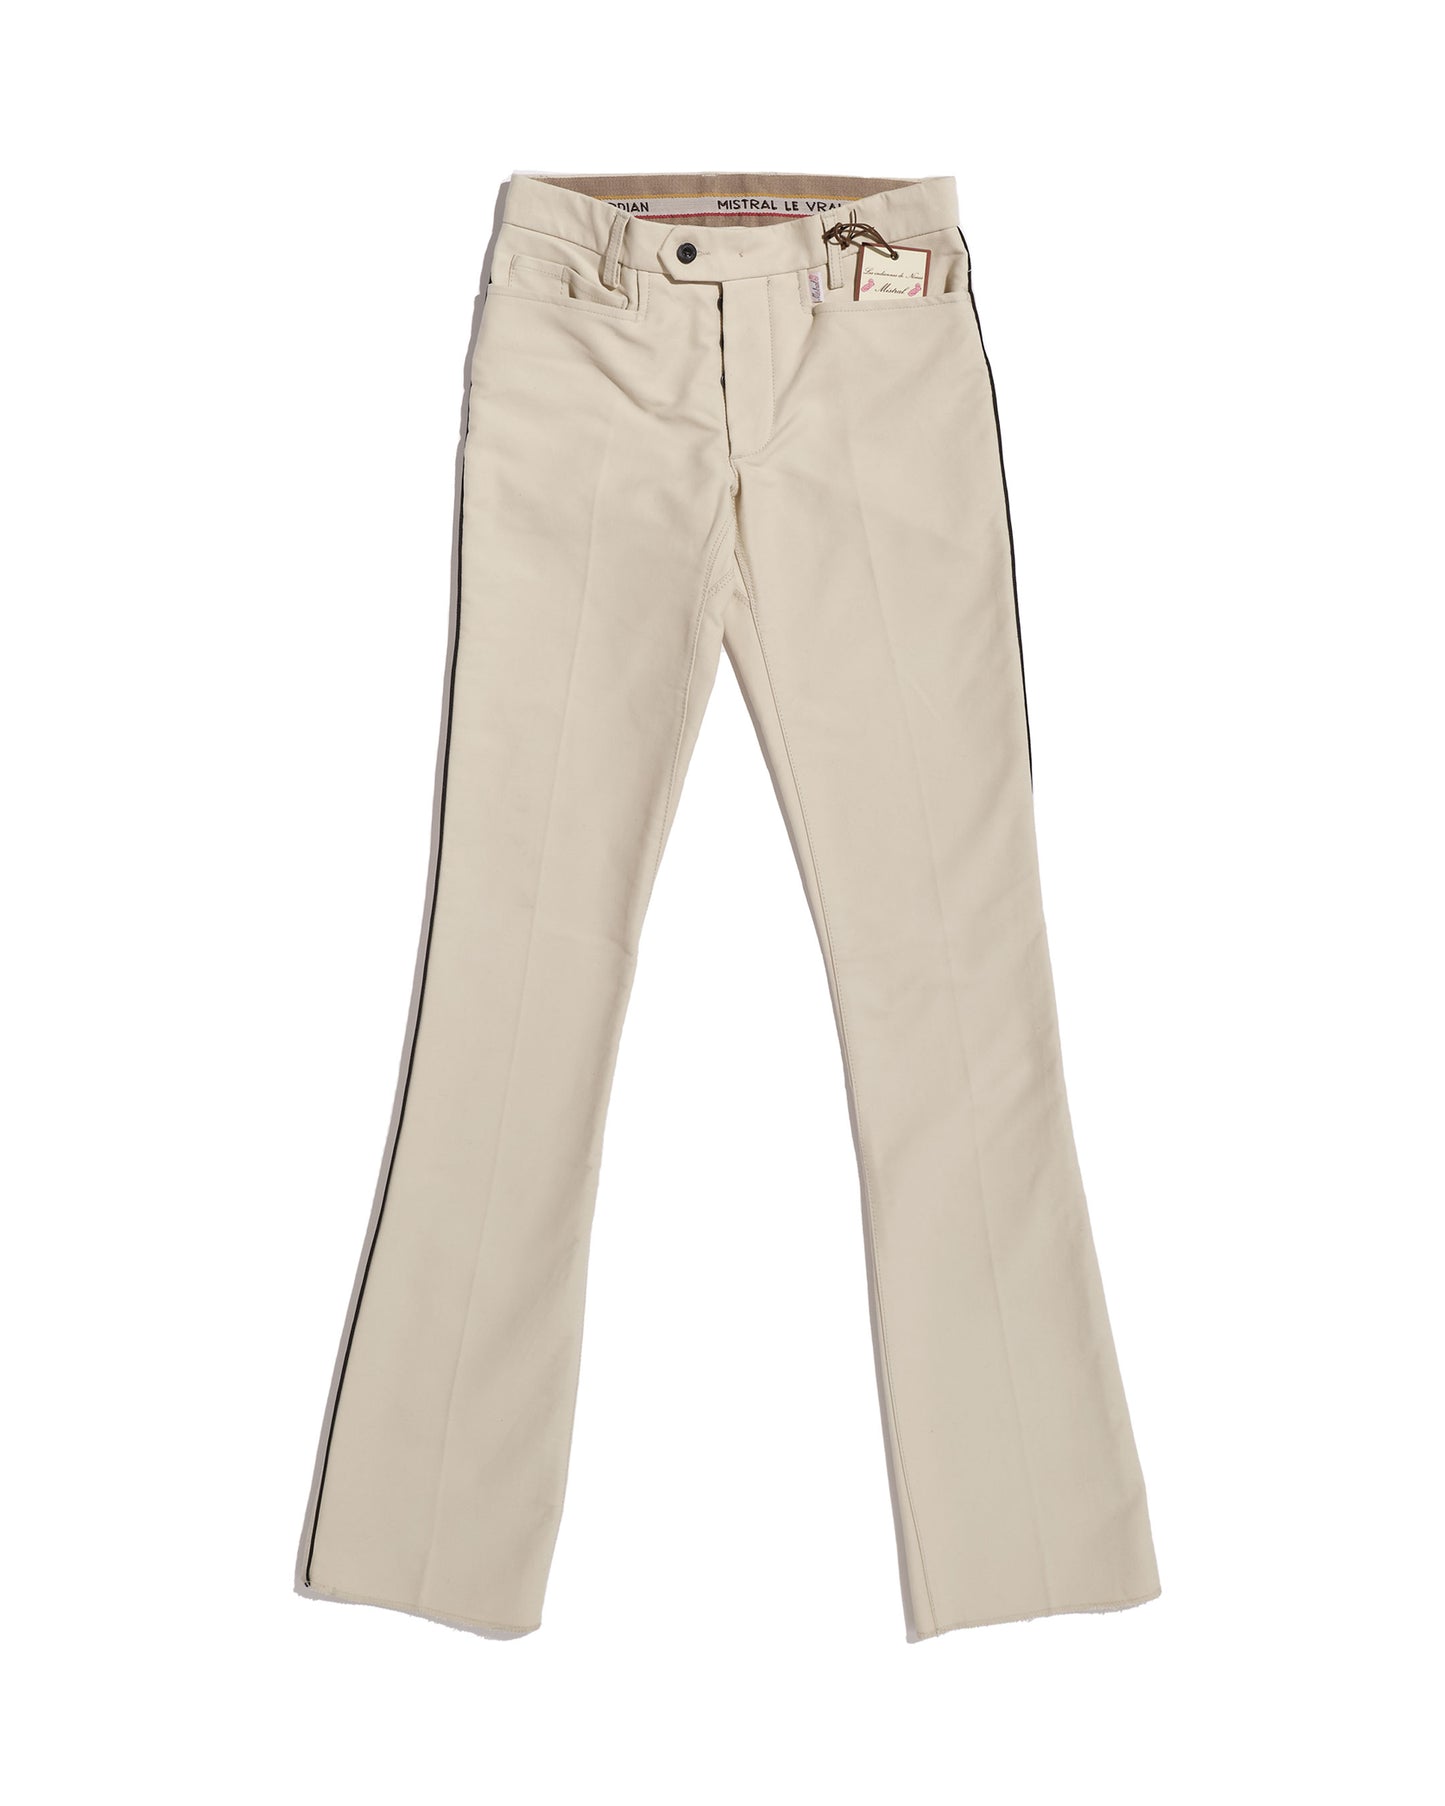 Pantalon de gardian moleskine (T36 remisée) - écru - Indiennes de Nîmes